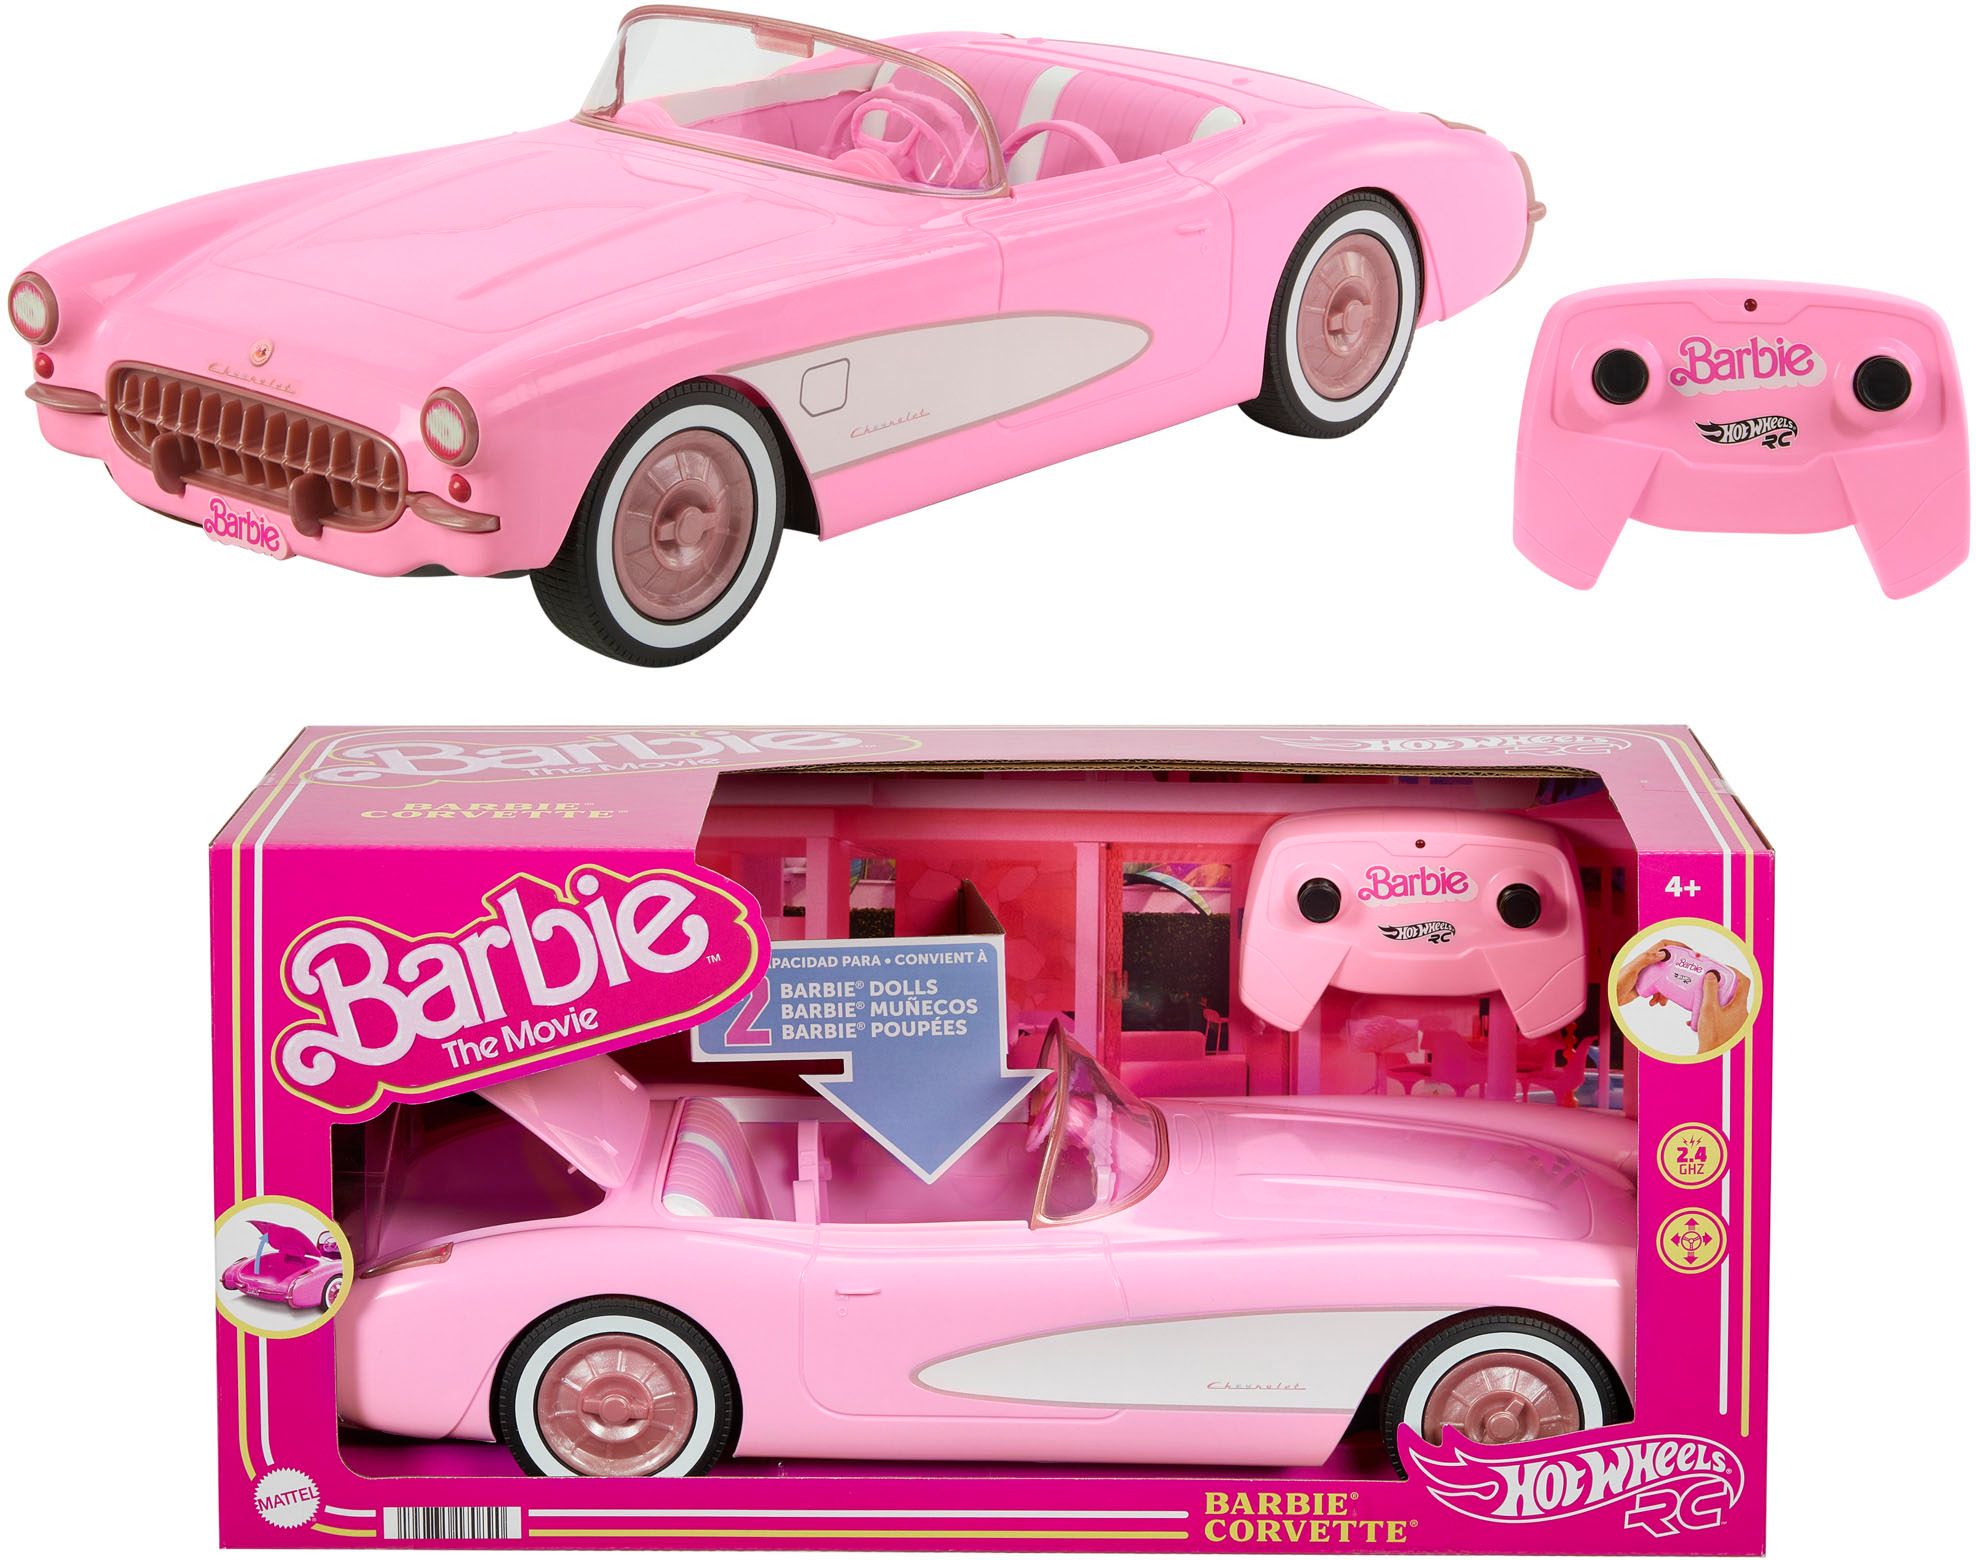 Barbie The Movie Corvette Remote Control Vehicle HPW40 - Best Buy | Best Buy U.S.